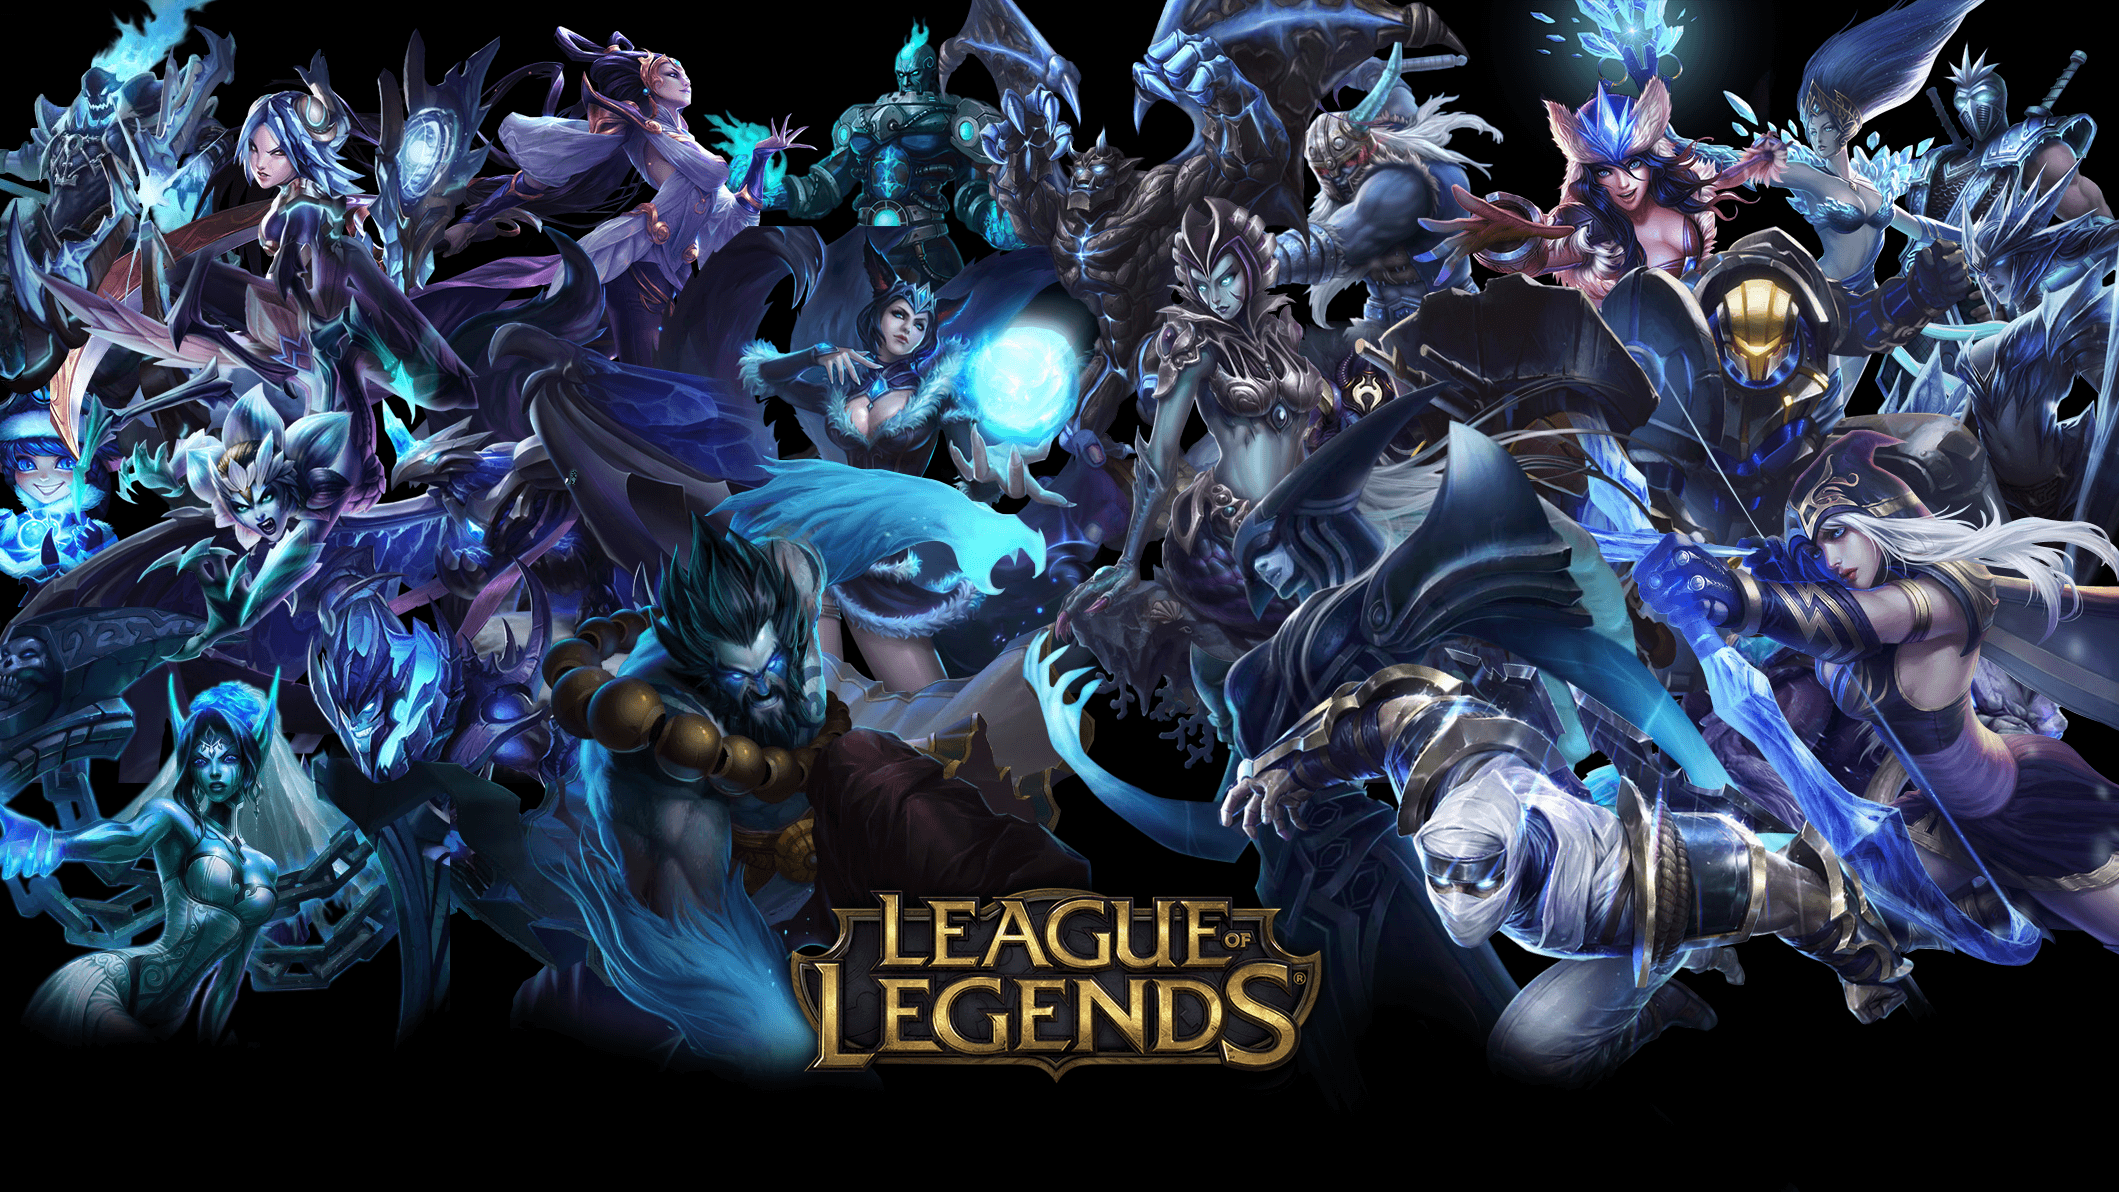 Fondos de pantalla de League of Legends - FondosMil